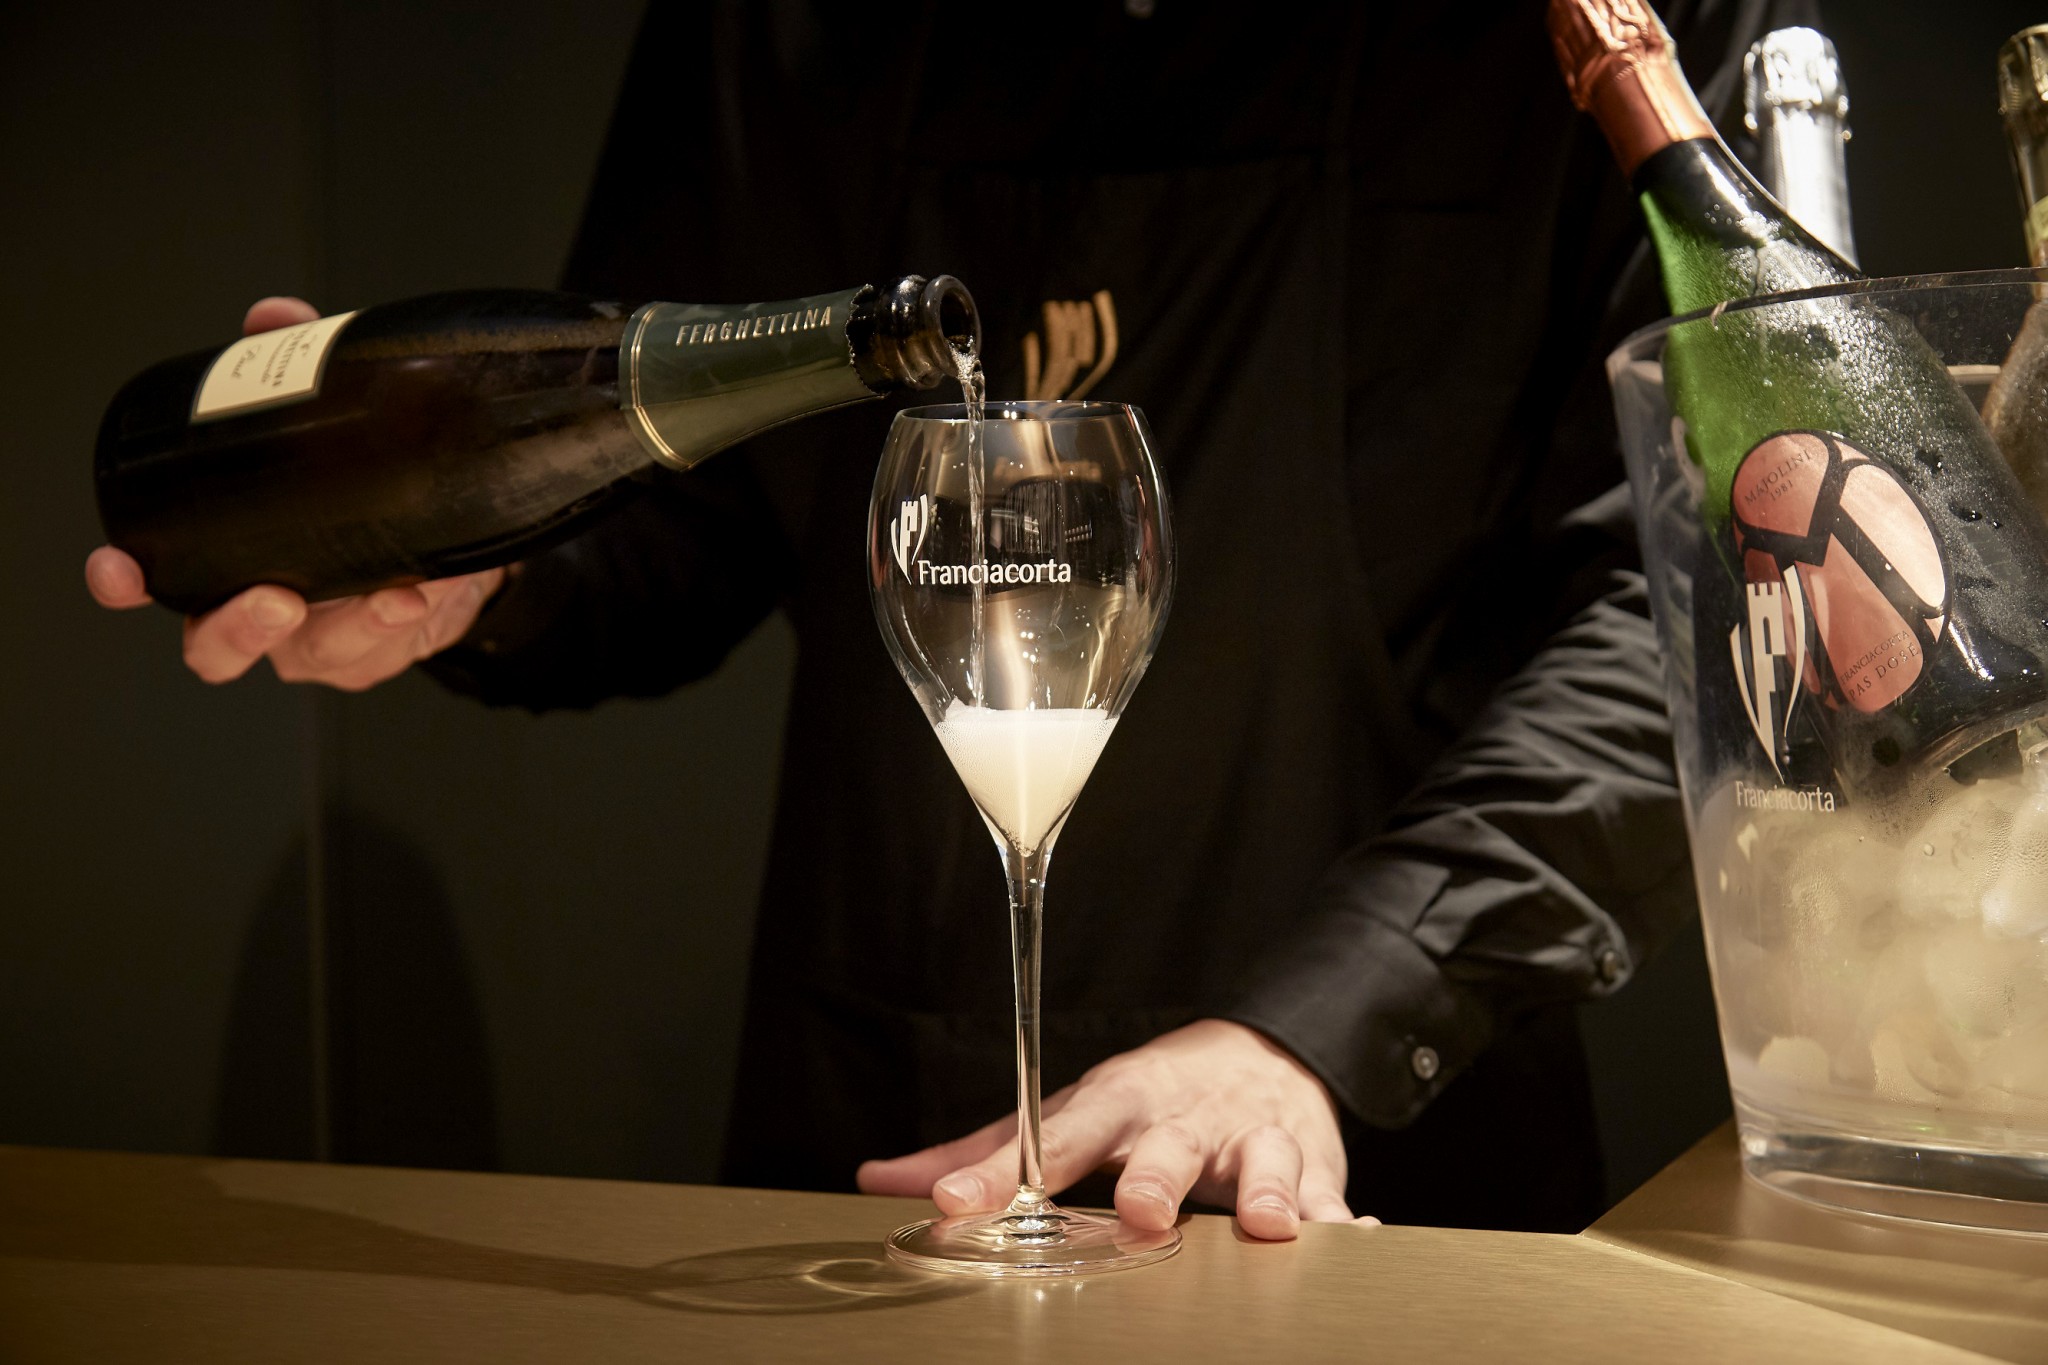 「フランチャコルタ」は瓶内二次発酵させた独自製法のワイン。フランチャコルタ地方の115の生産者が作っている。ブリュット1,200円～（グラス）。